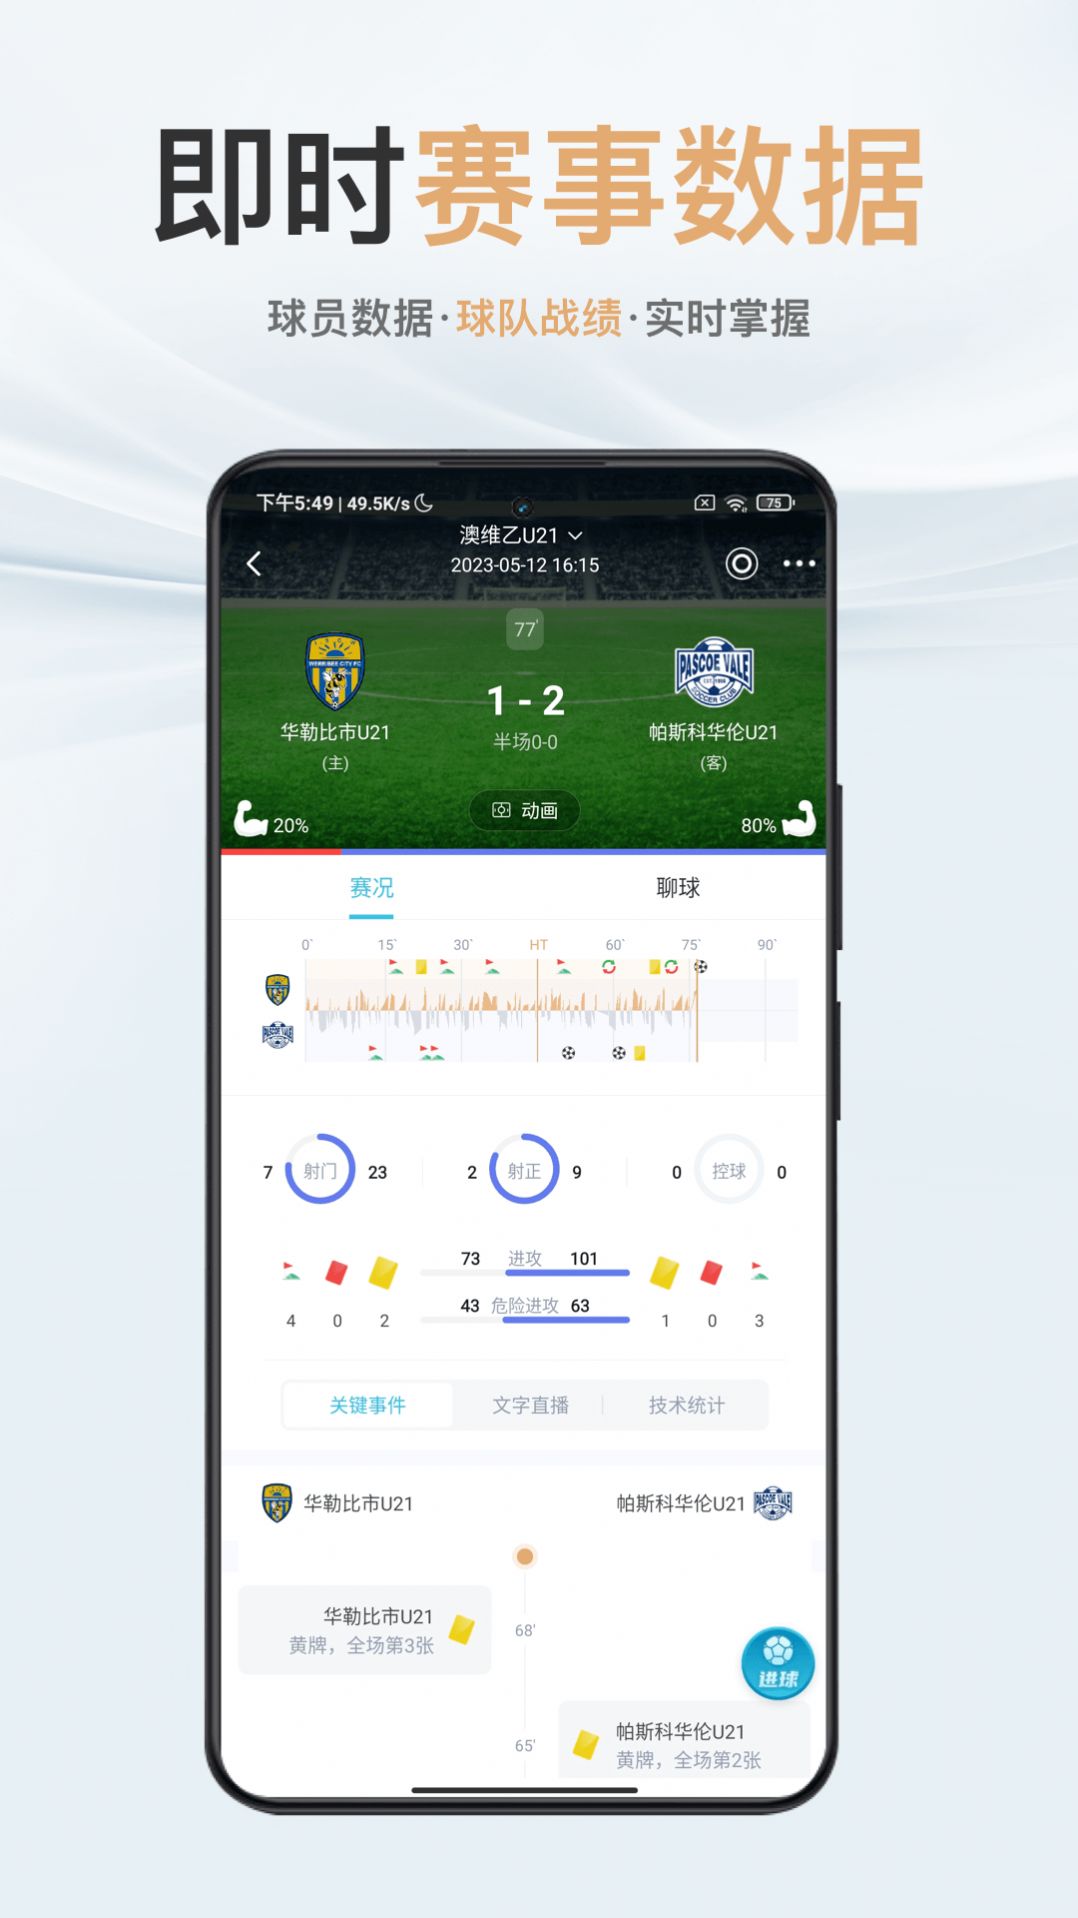 芸豆直播tv足球体育软件免费下载安卓版图片1